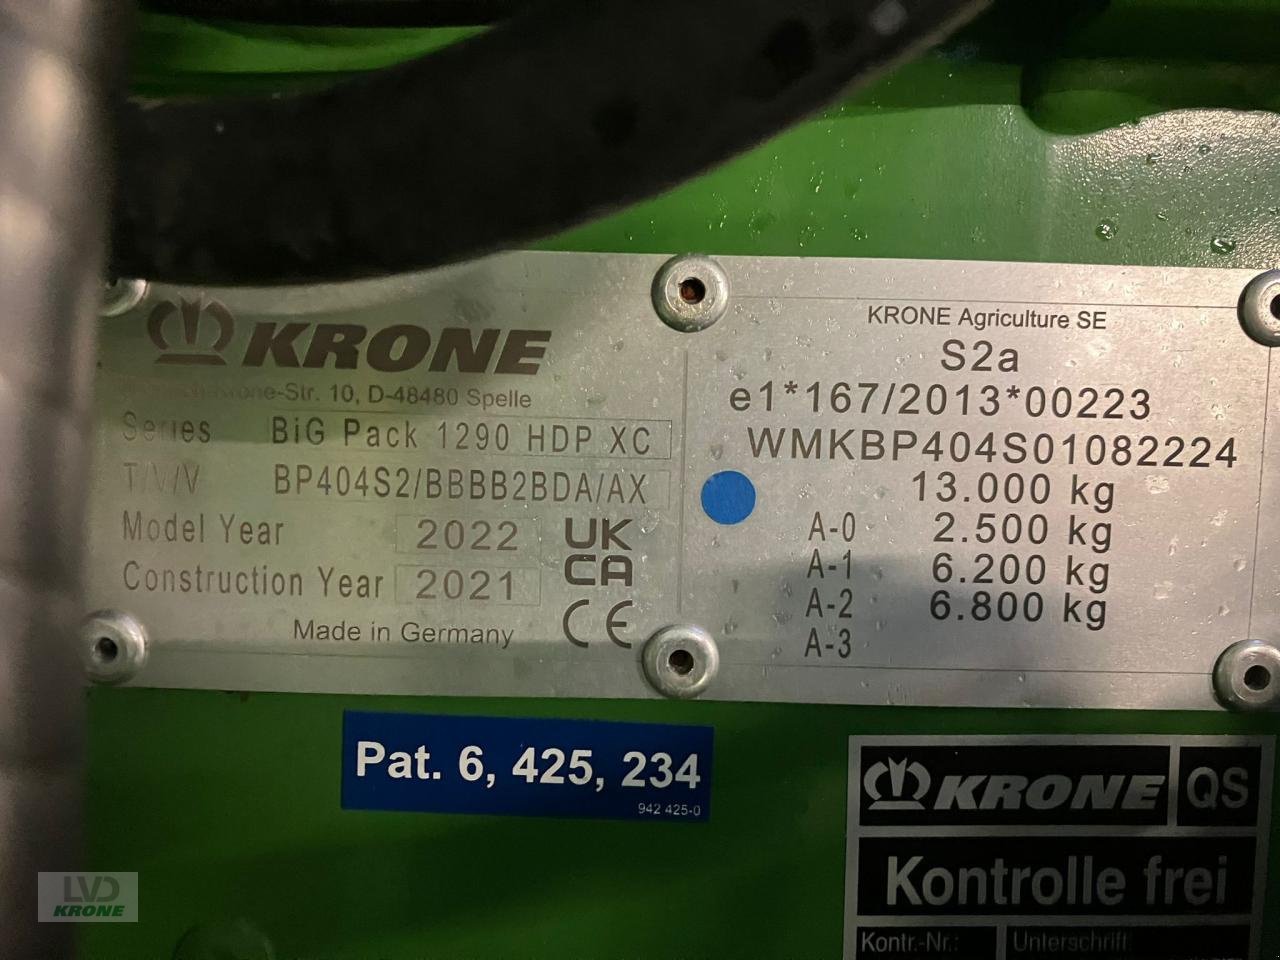 Großpackenpresse типа Krone BiG Pack 1290 HDP XC, Gebrauchtmaschine в Spelle (Фотография 10)